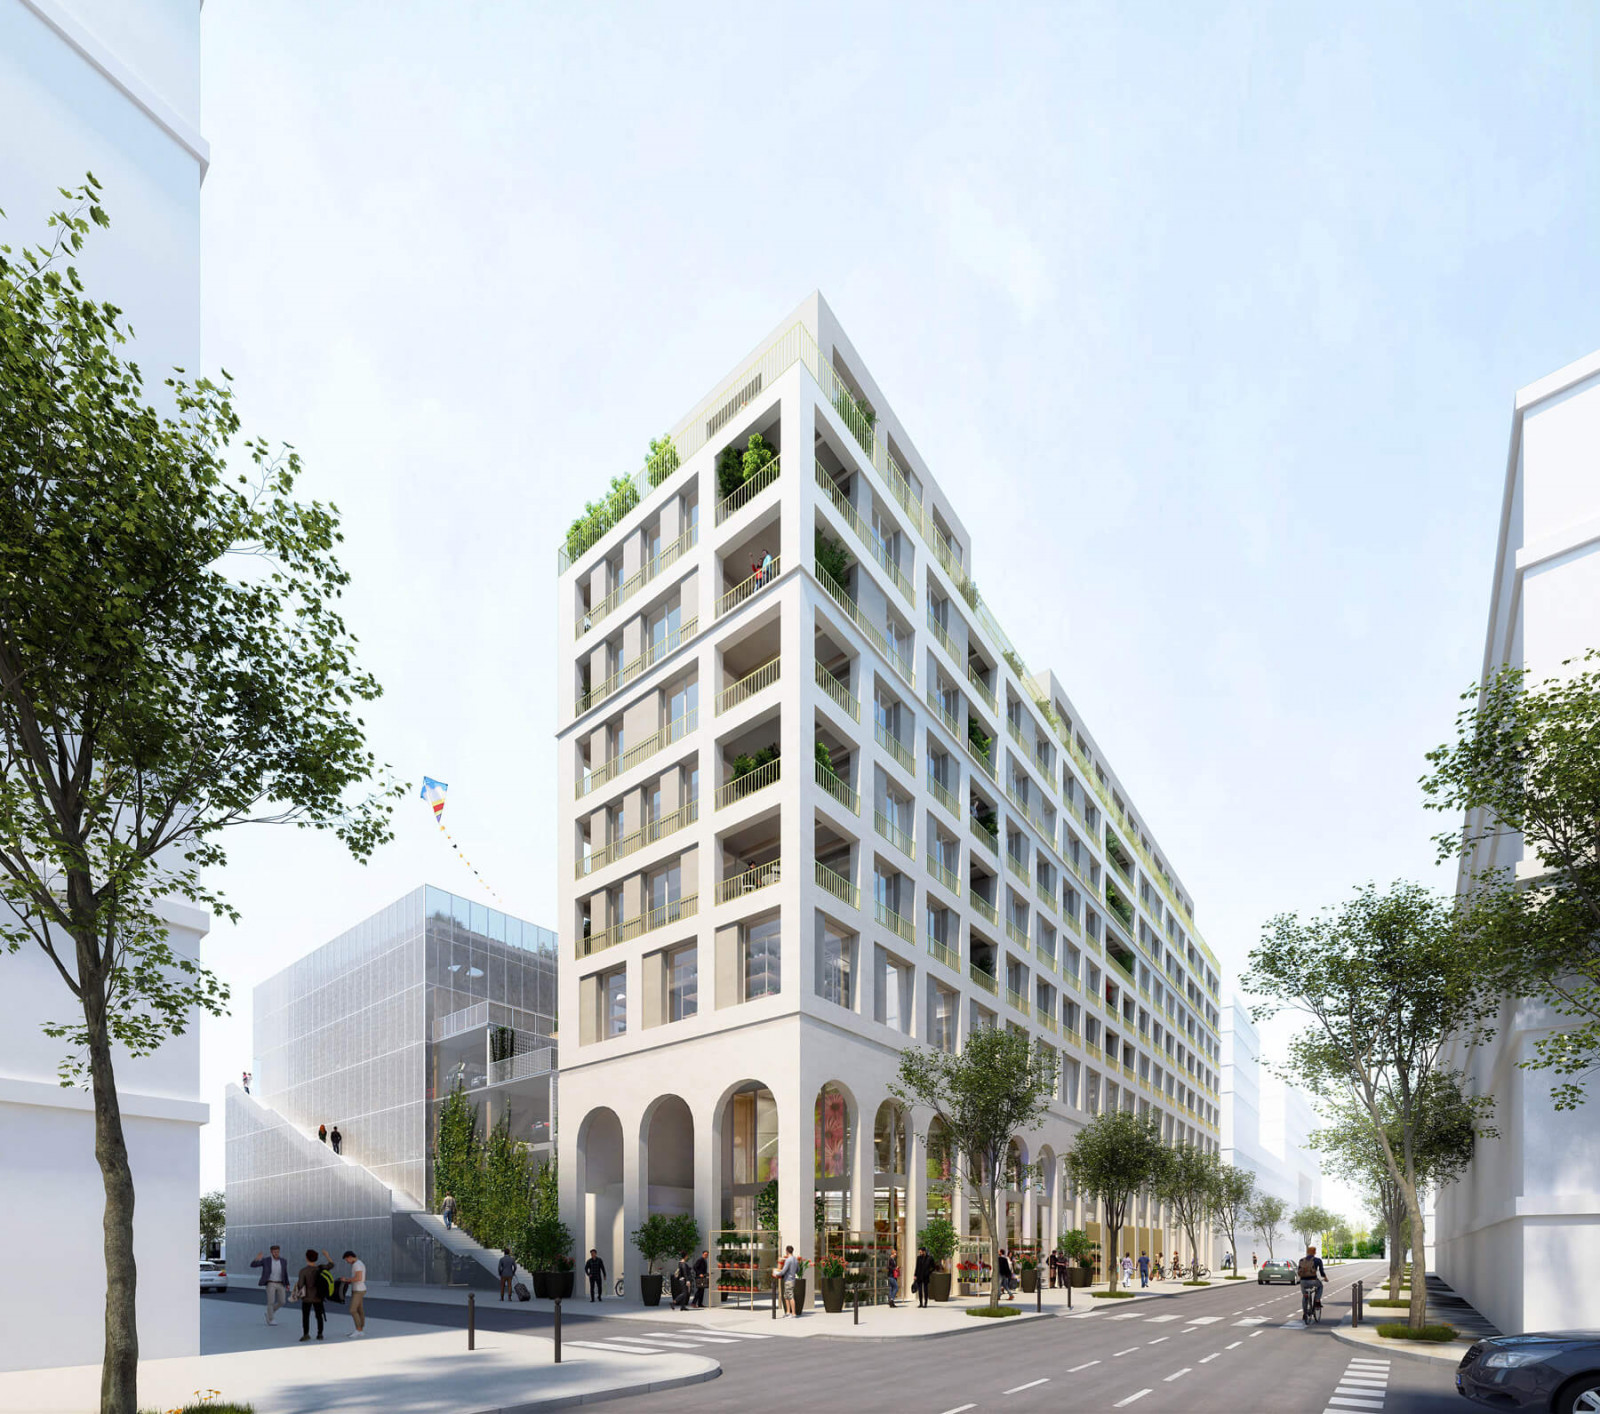 graam-armagnac-sud-01-logements-parking-bordeaux-exterieur-rue-facade-arche